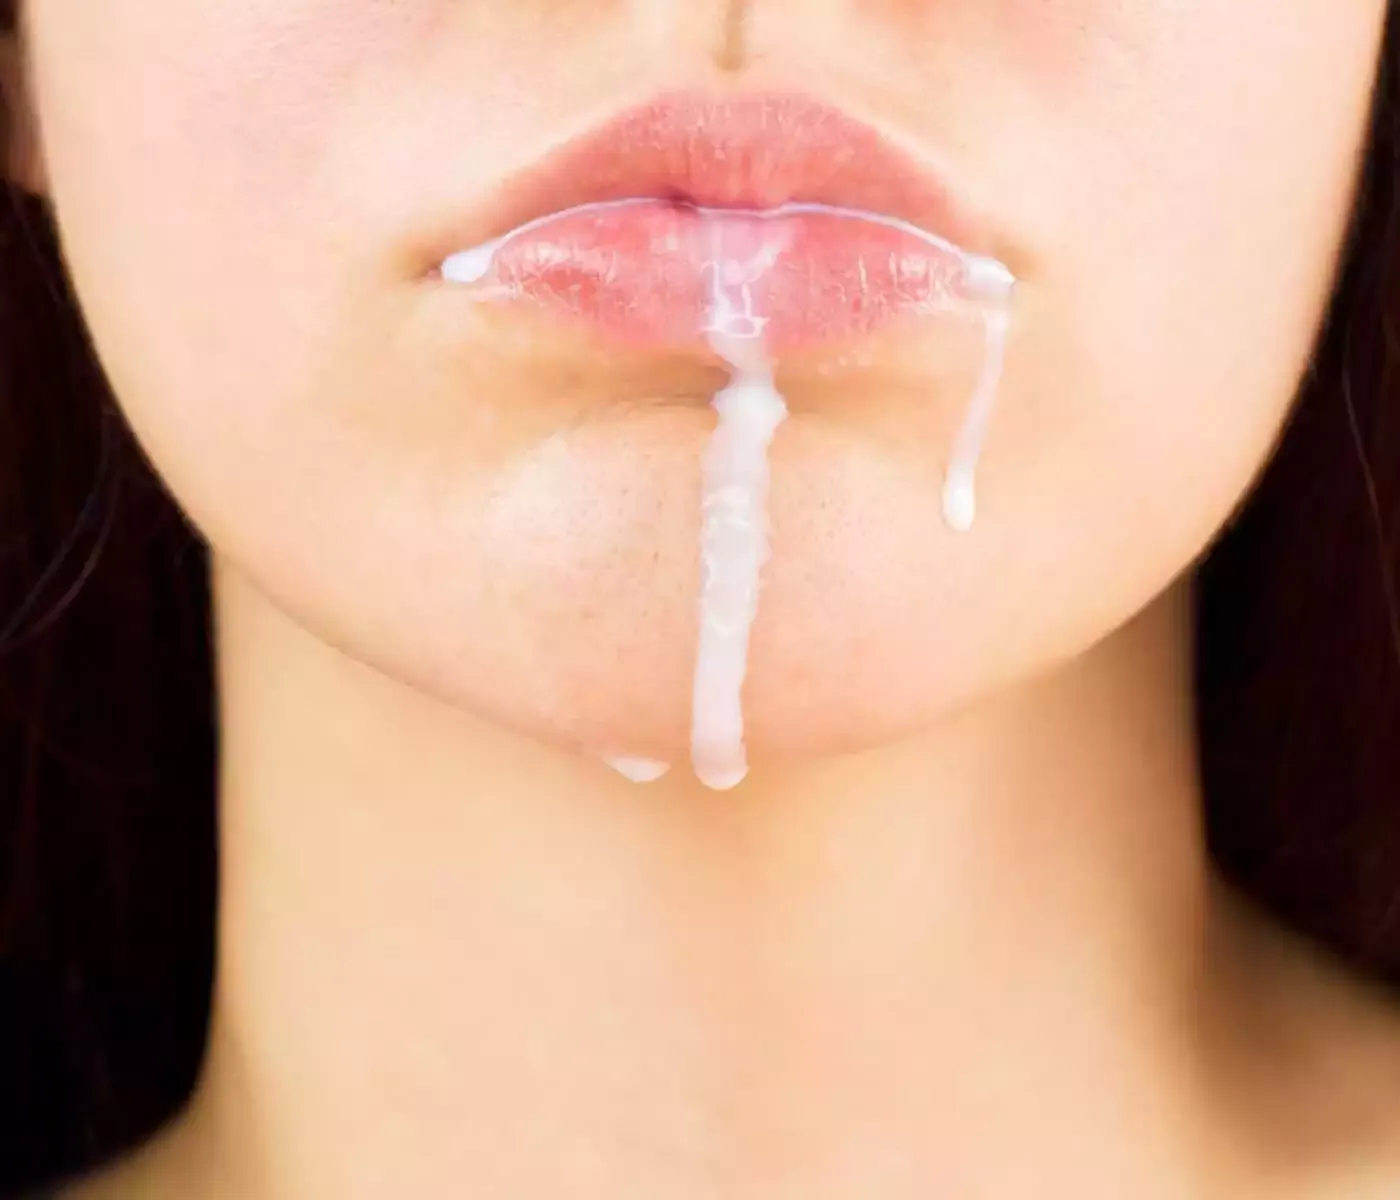 Großaufnahme vom Gesicht einer Frau der Sperma aus dem Mund fließt